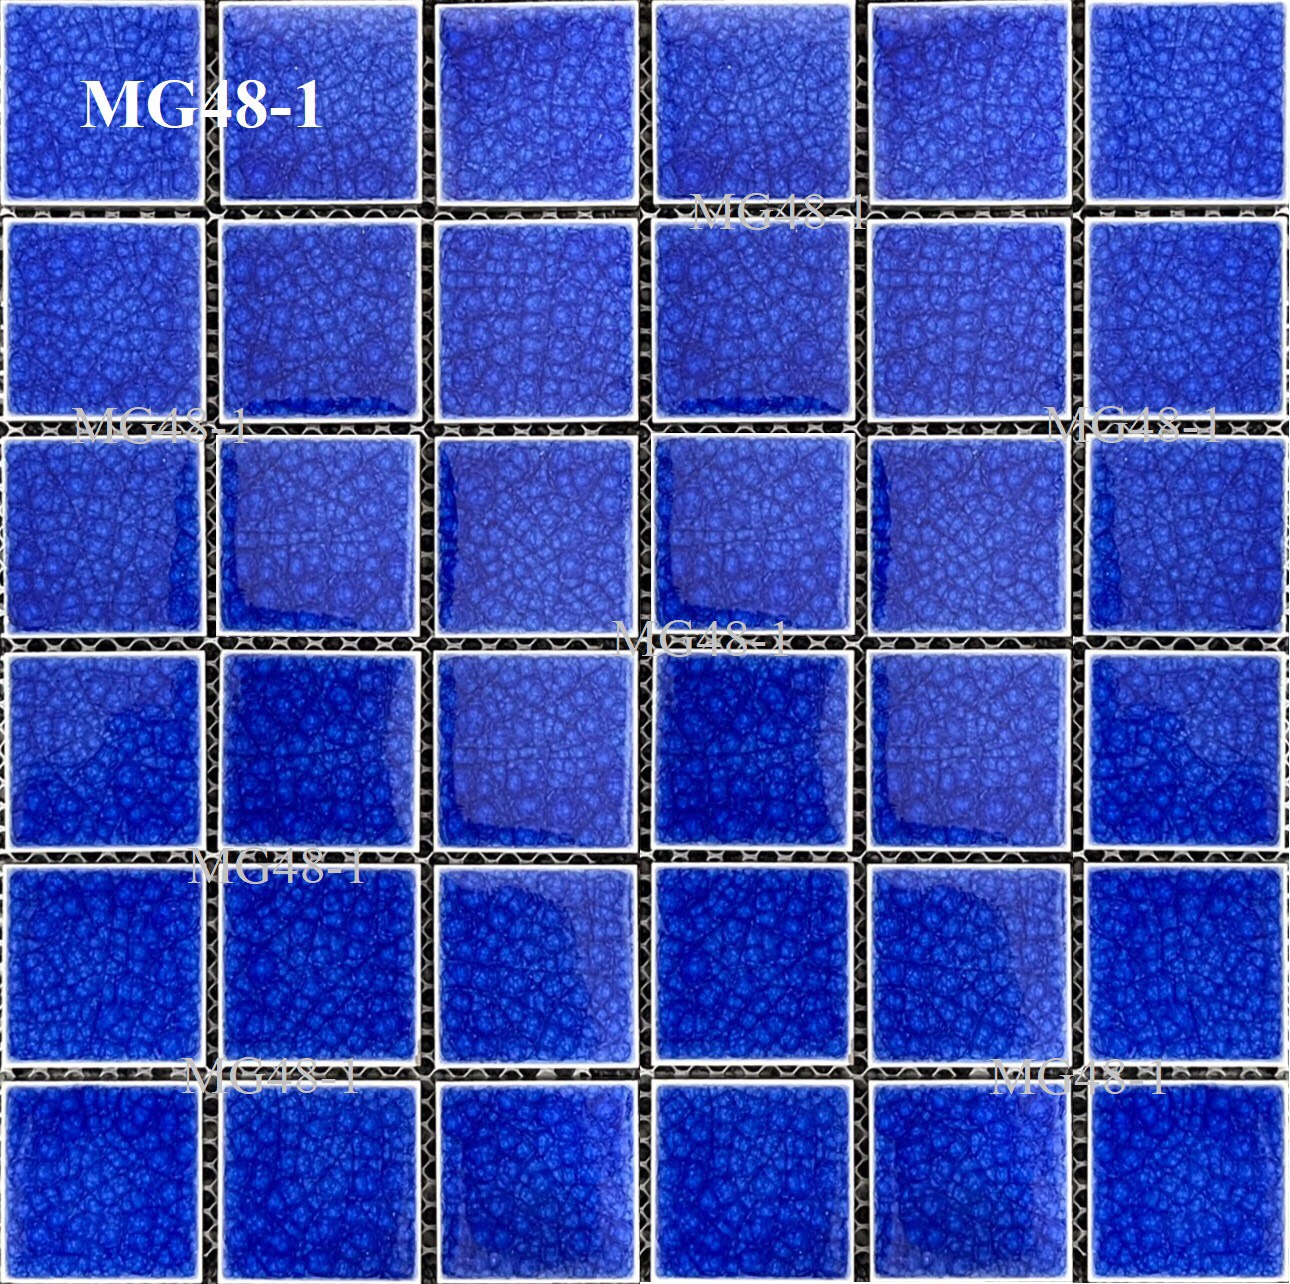 Gạch Mosaic MG48-1